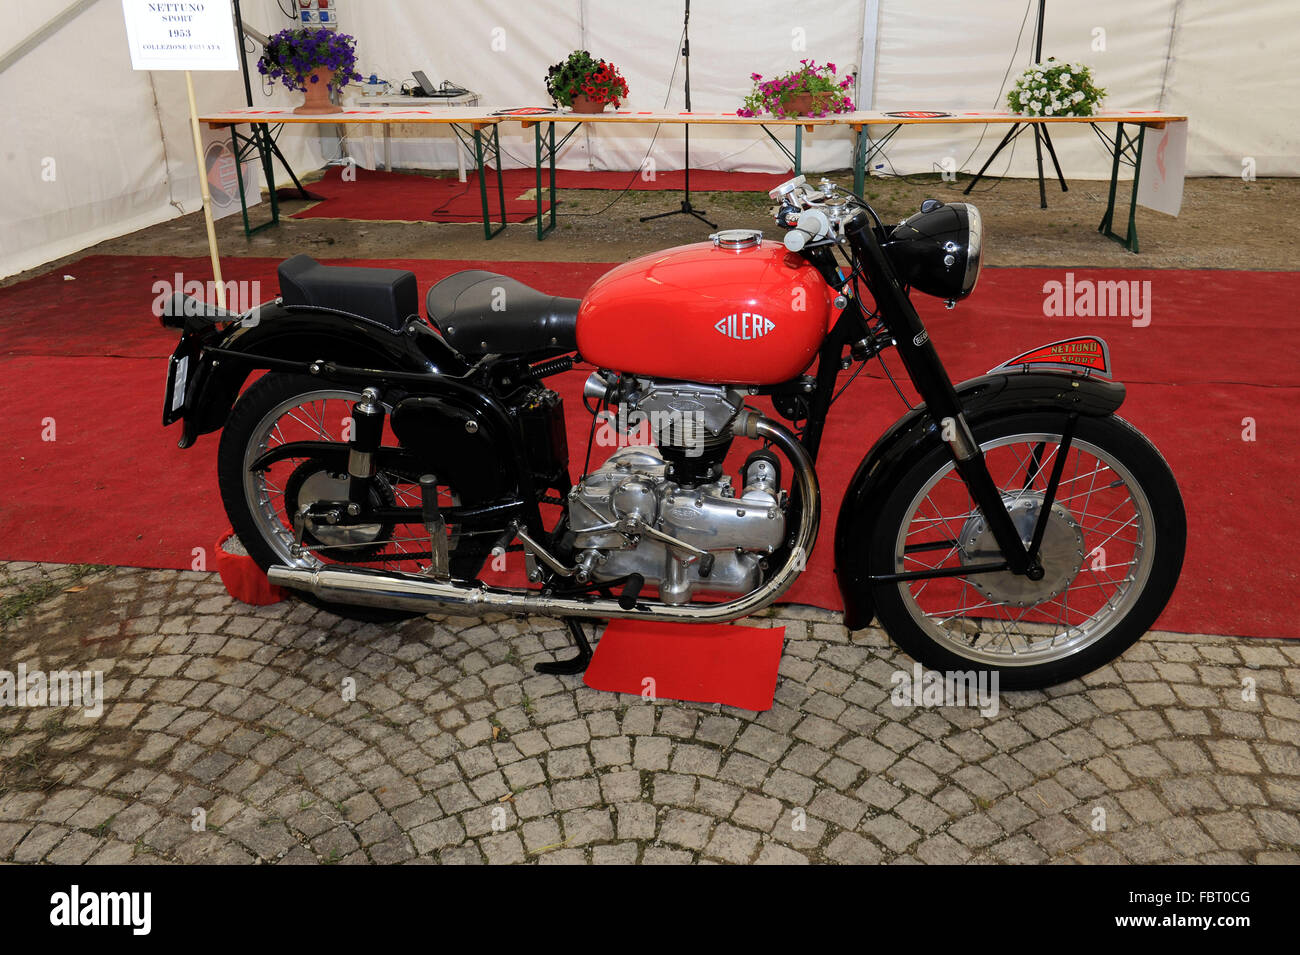 Arcore - Esposizione di modelli storici della fabbrica biciclette Gilera.  Modello 250 sport Nettuno 1953 Foto stock - Alamy